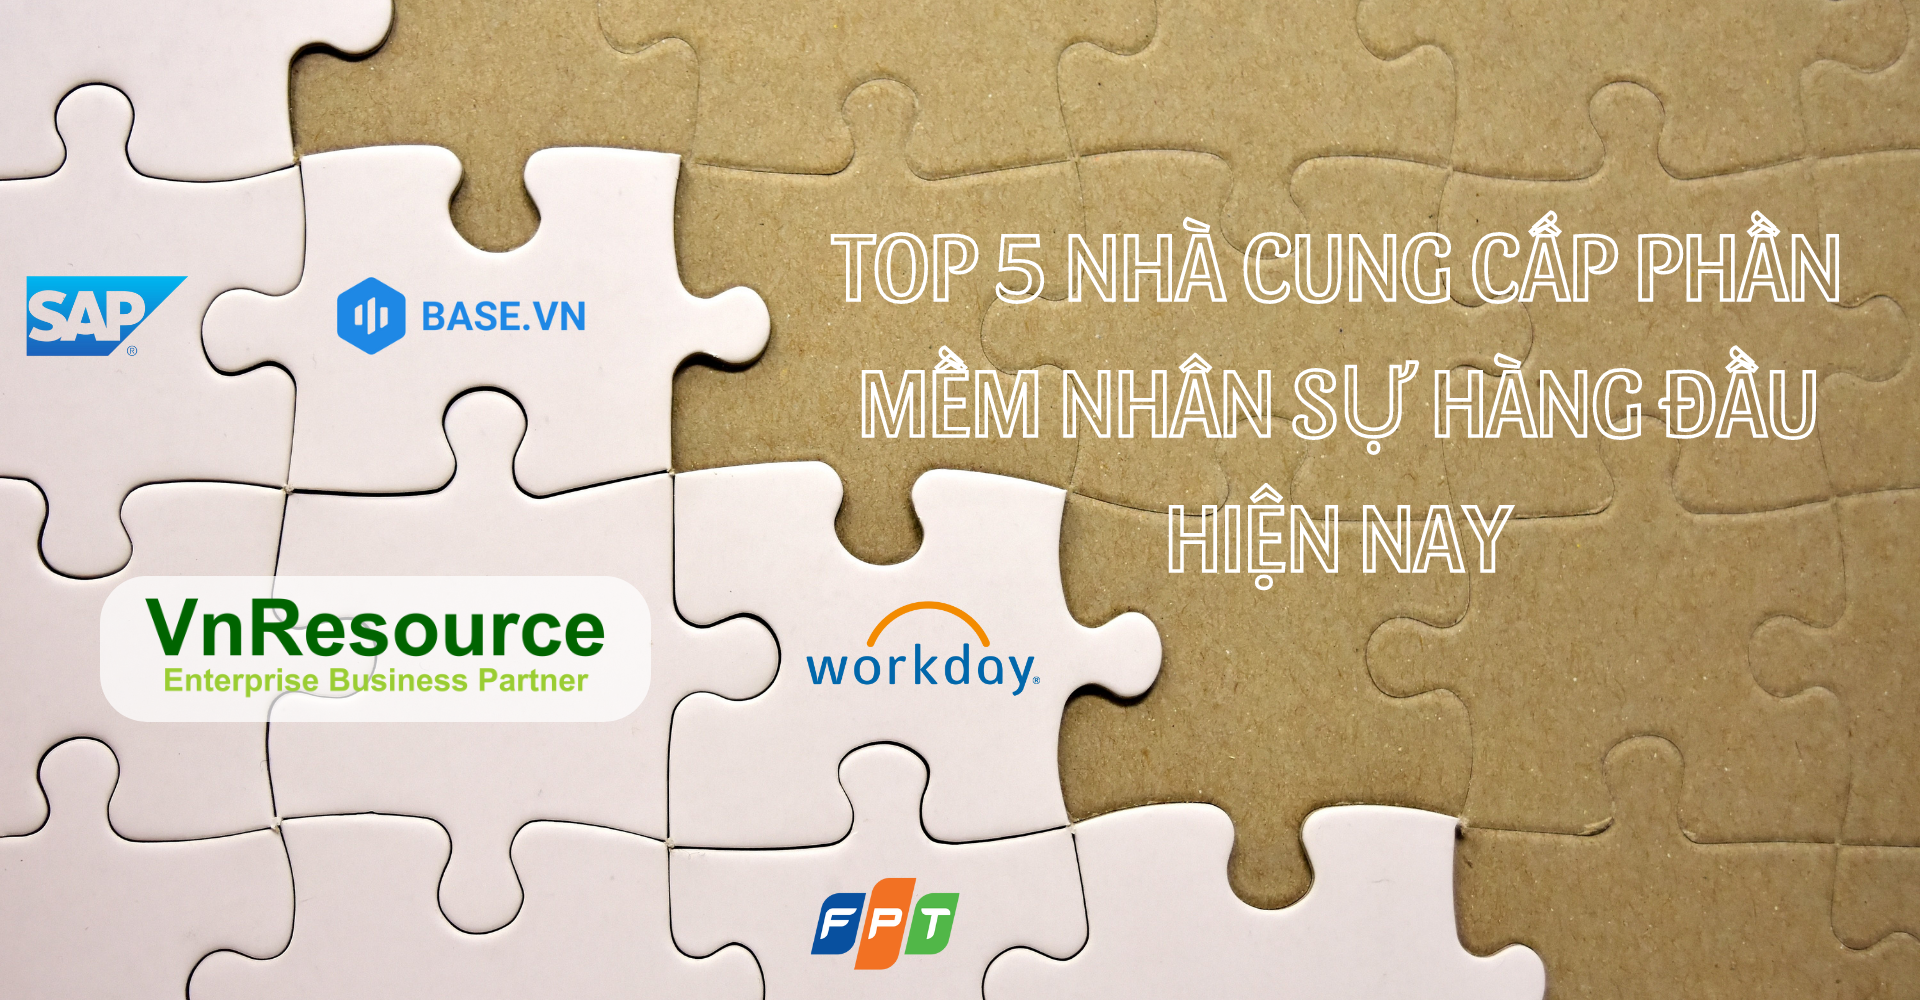 Top 5 nhà cung cấp phần mềm nhân sự hàng đầu hiện nay